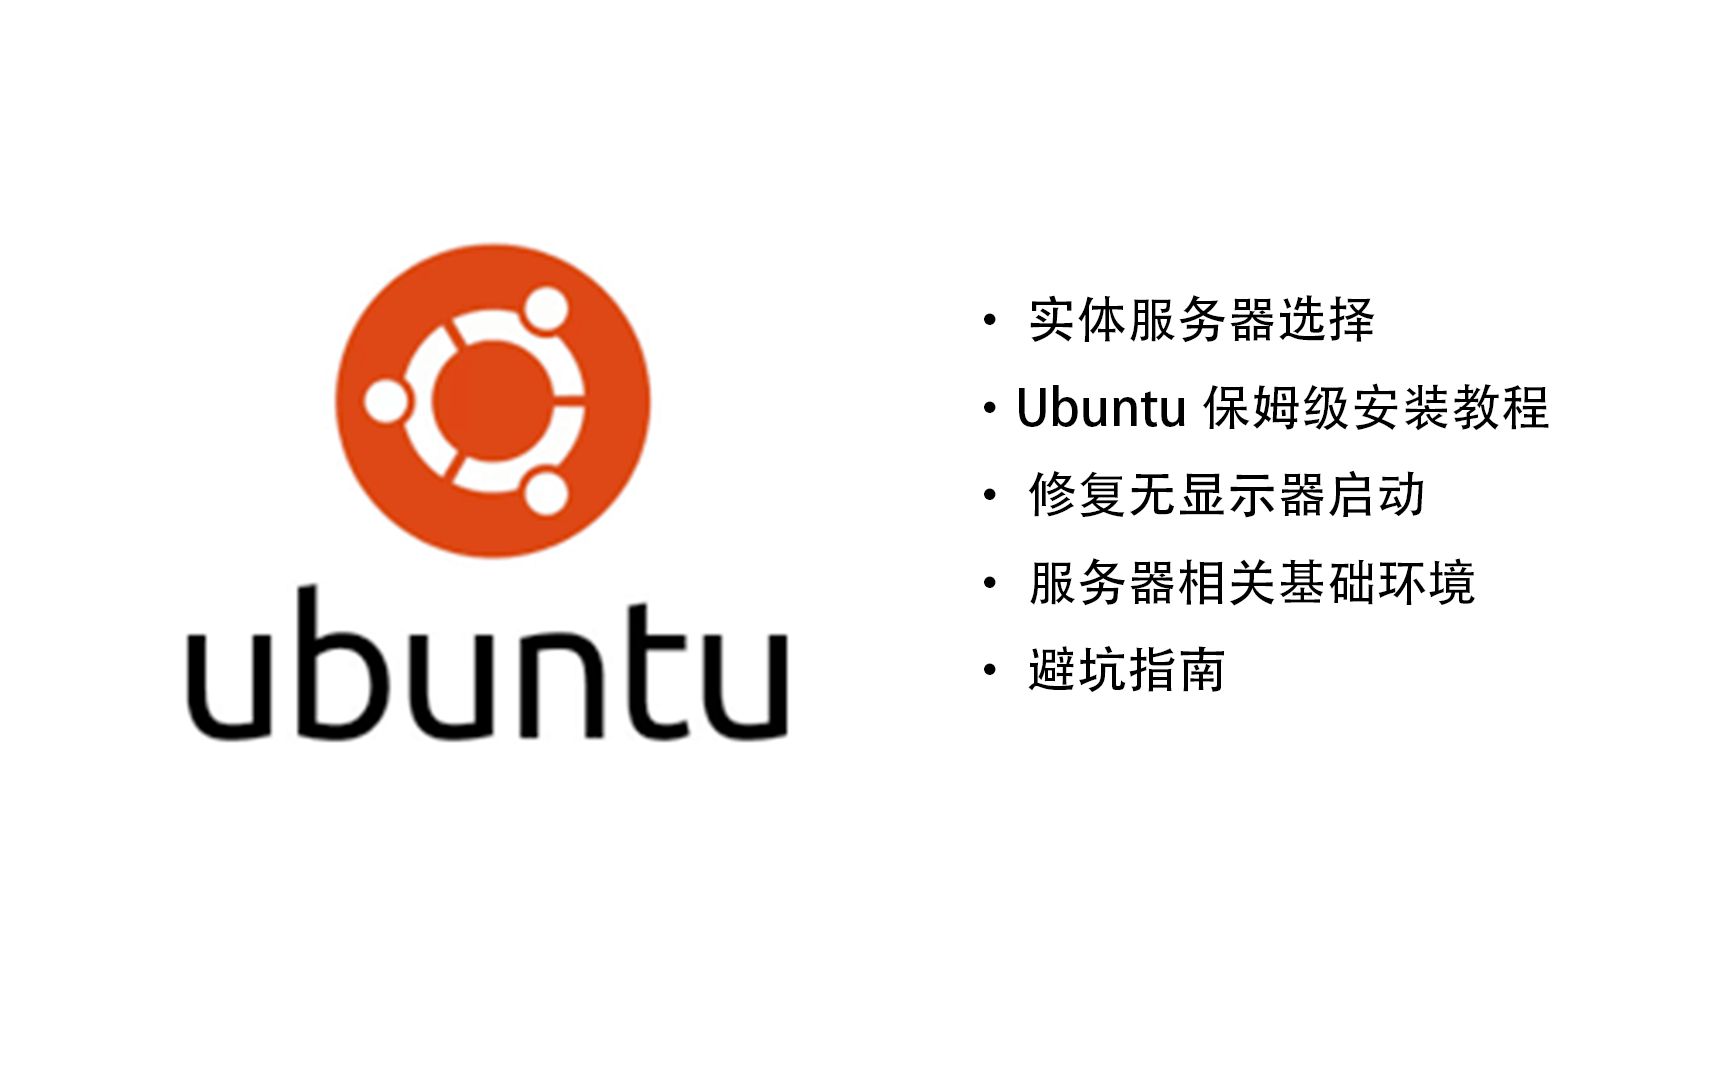 自建实体服务器并安装Ubuntu&使用Refind解决Linux无显示器引导问题&保姆级Ubuntu安装教程&自建家庭服务器